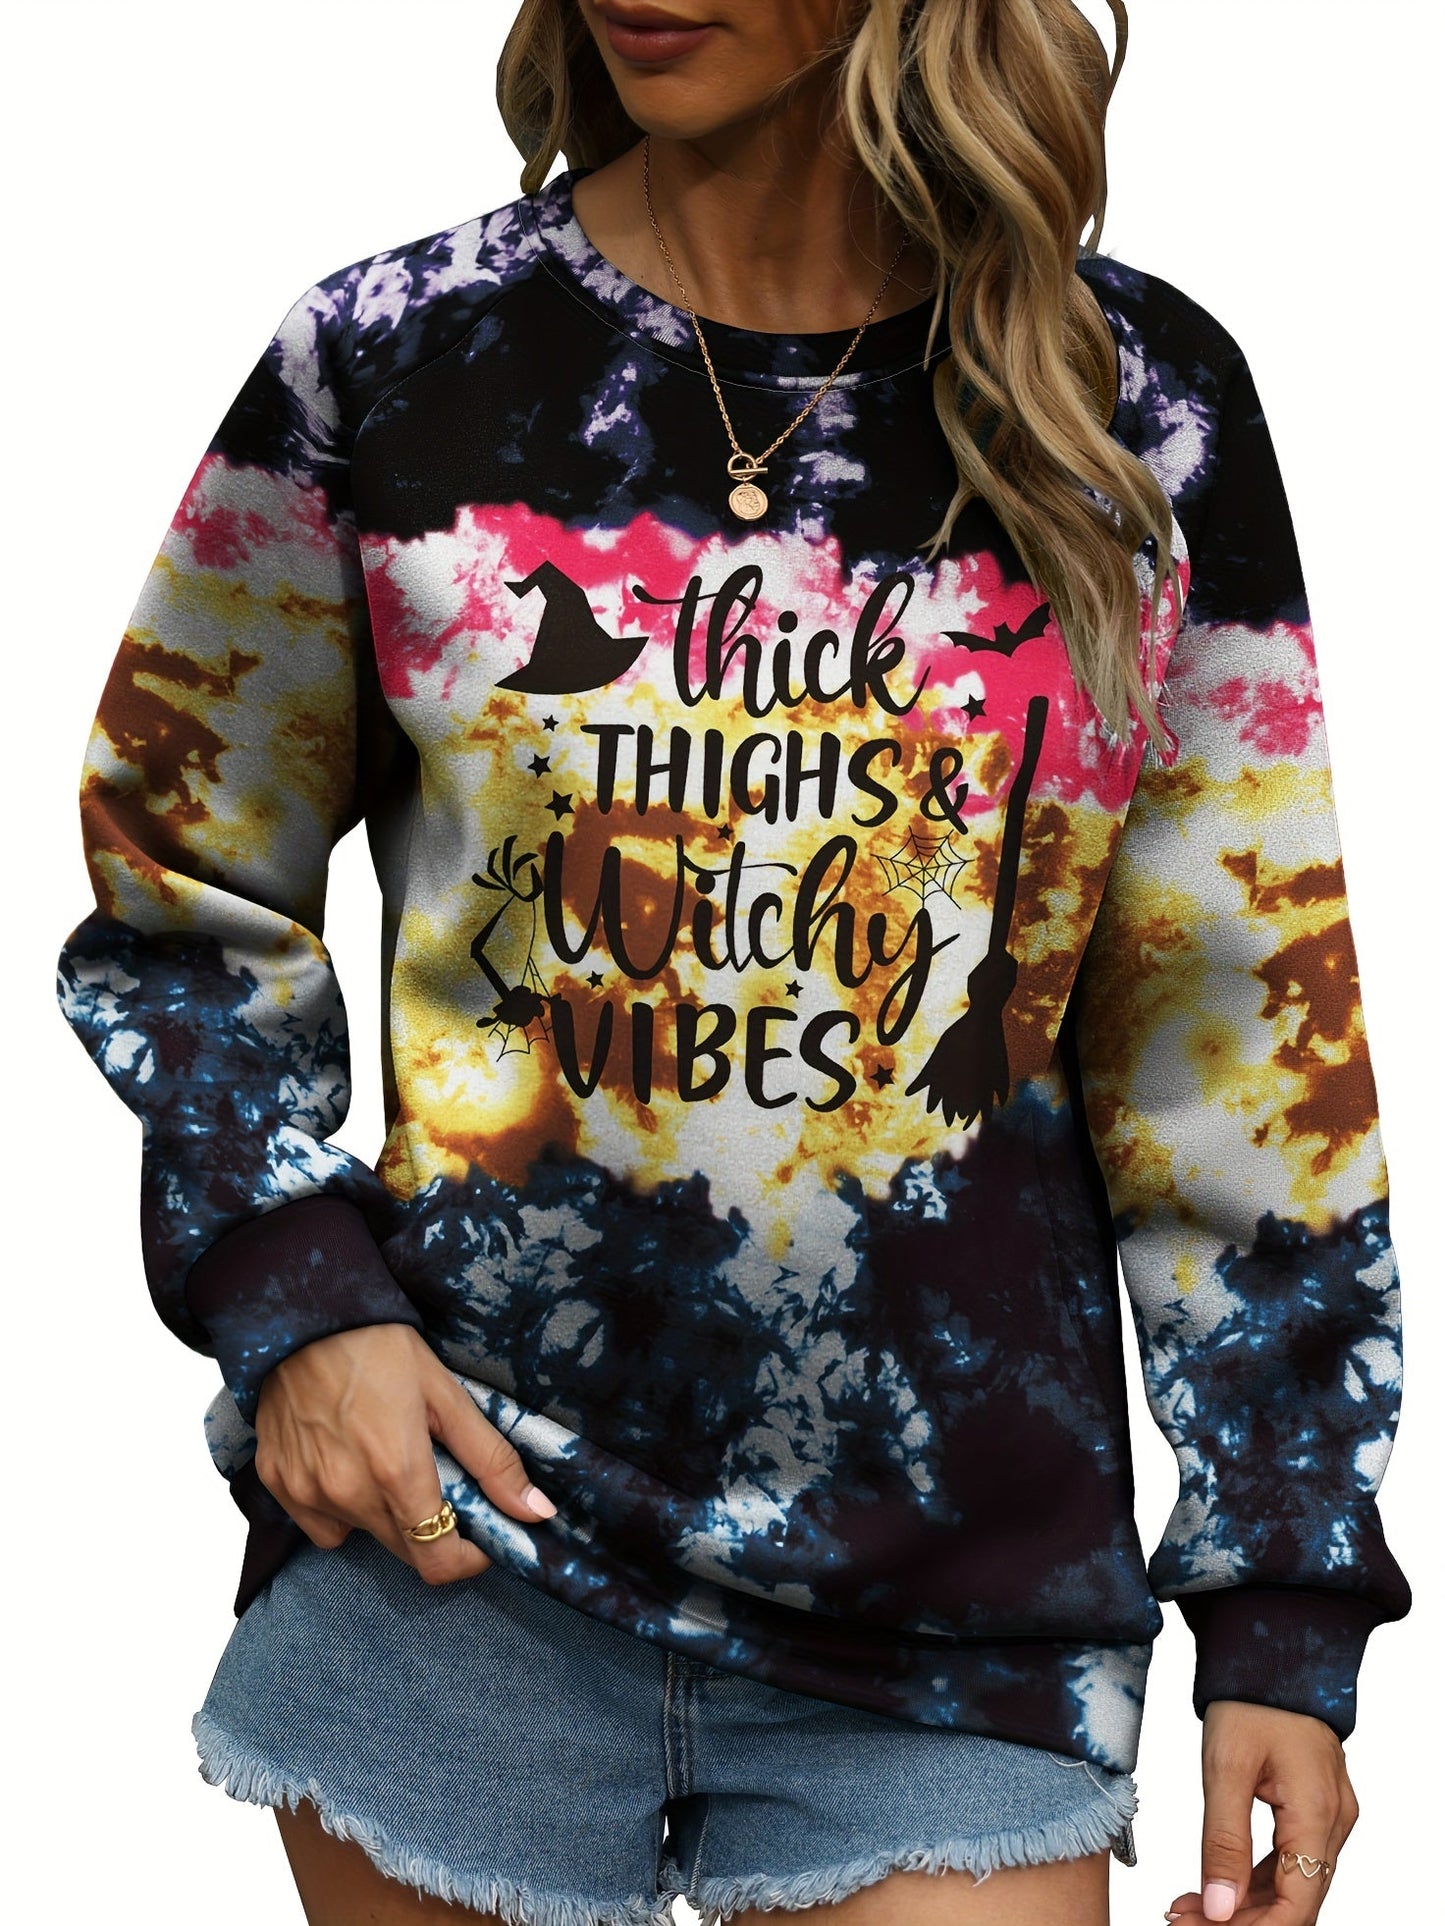 Spooky Season Plus Size Halloween Sweatshirt for Women